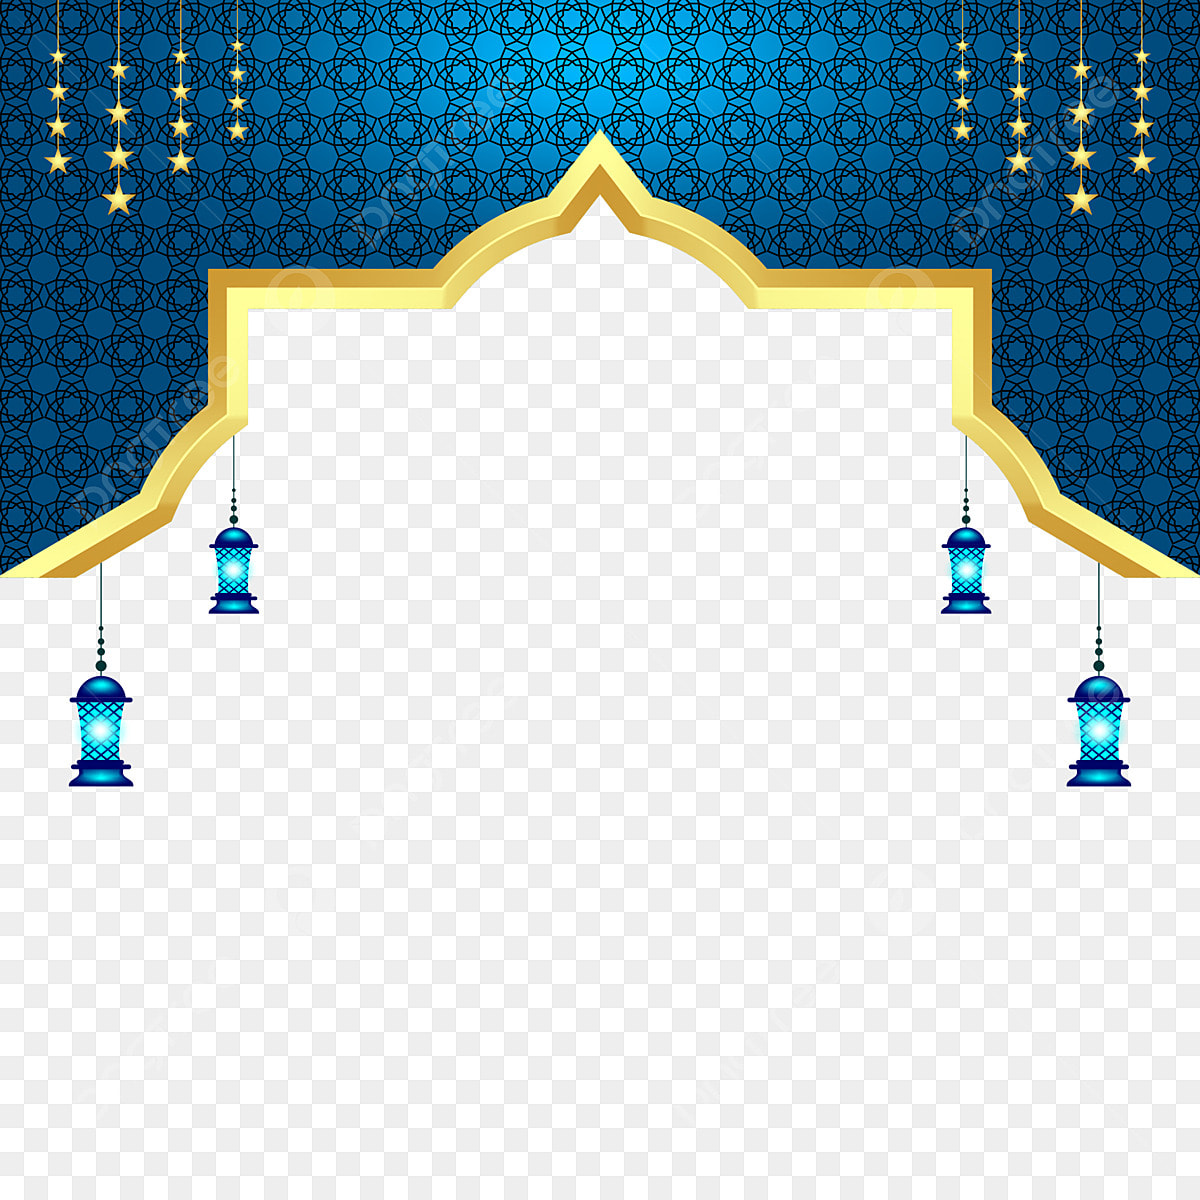 Eid Al Adha 2023 PNG Image, Islamic Festival Eid Al Adha Muharram Transparent Twibbon Frame Design, Eid Al Adha, Idul Adha, Muharram PNG Image For Free Download